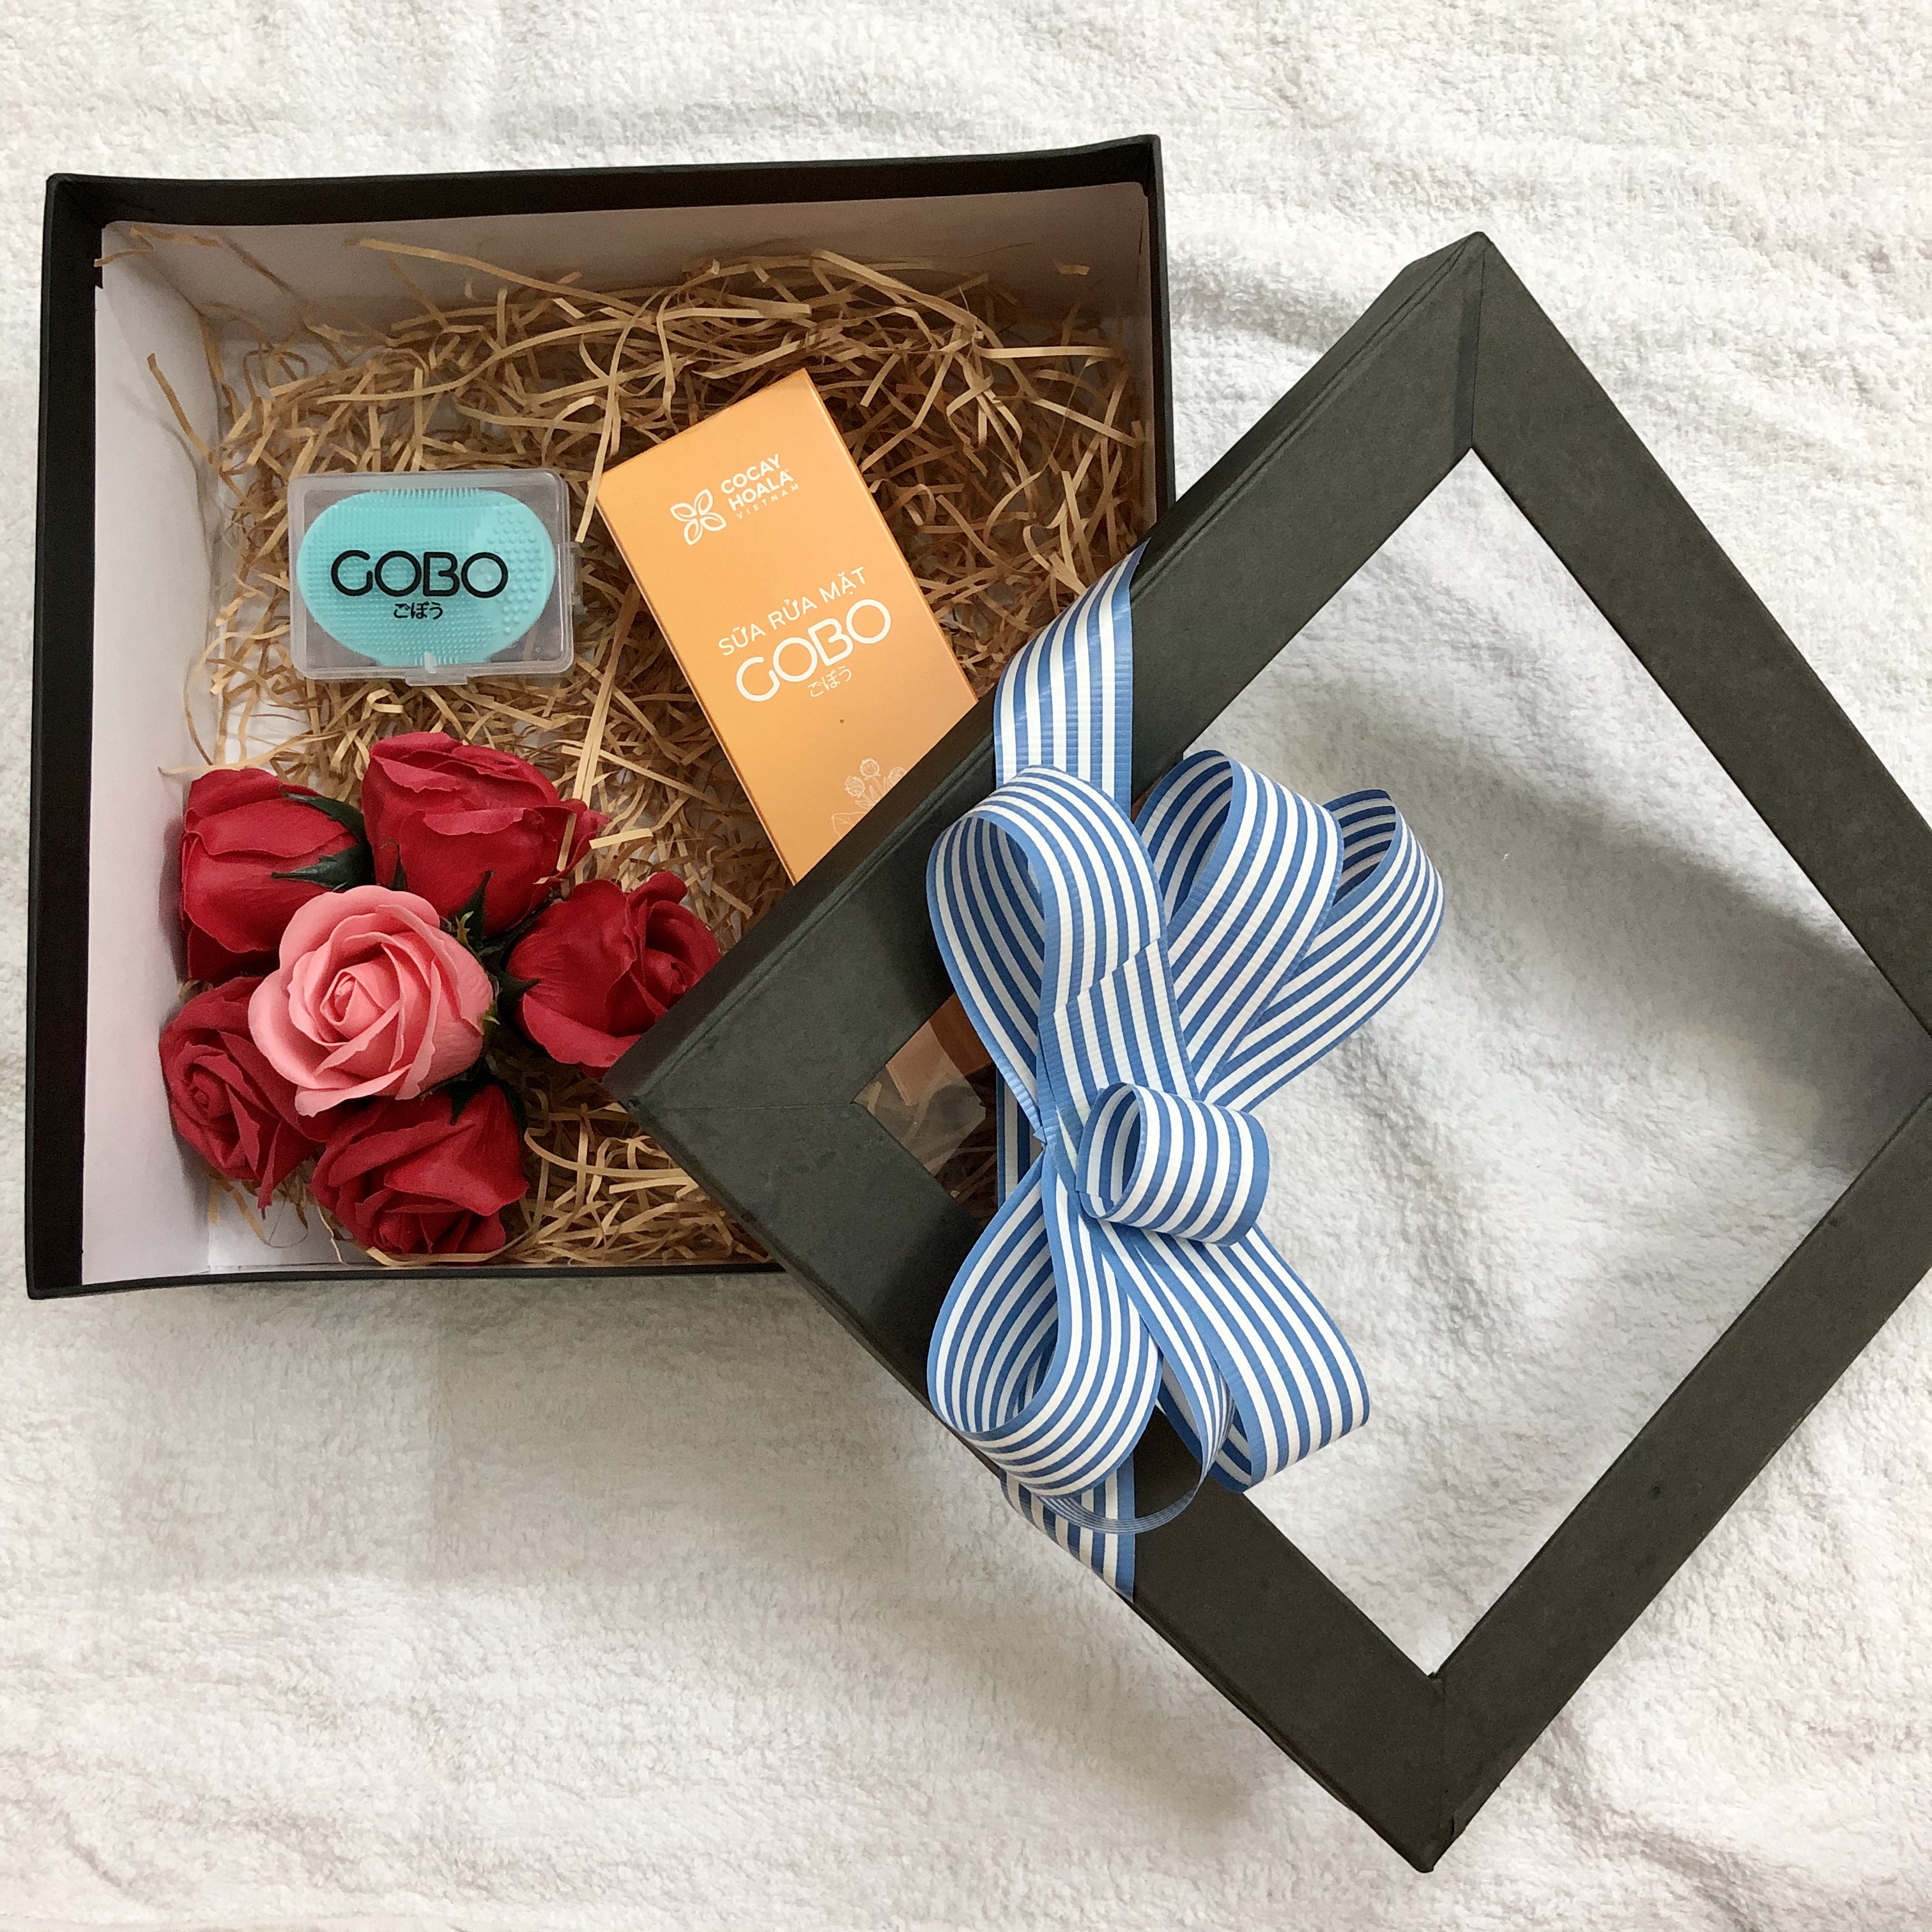 Quà tặng cho nàng - Sữa rửa mặt GOBO hỗ trợ điều trị mụn, thon gọn gương mặt, làm sáng sa và thu nhỏ lỗ chân lông - Sản phẩm thiên nhiên từ COCAYHOALA (Có bao gồm hộp quà tặng và hoa như hình)